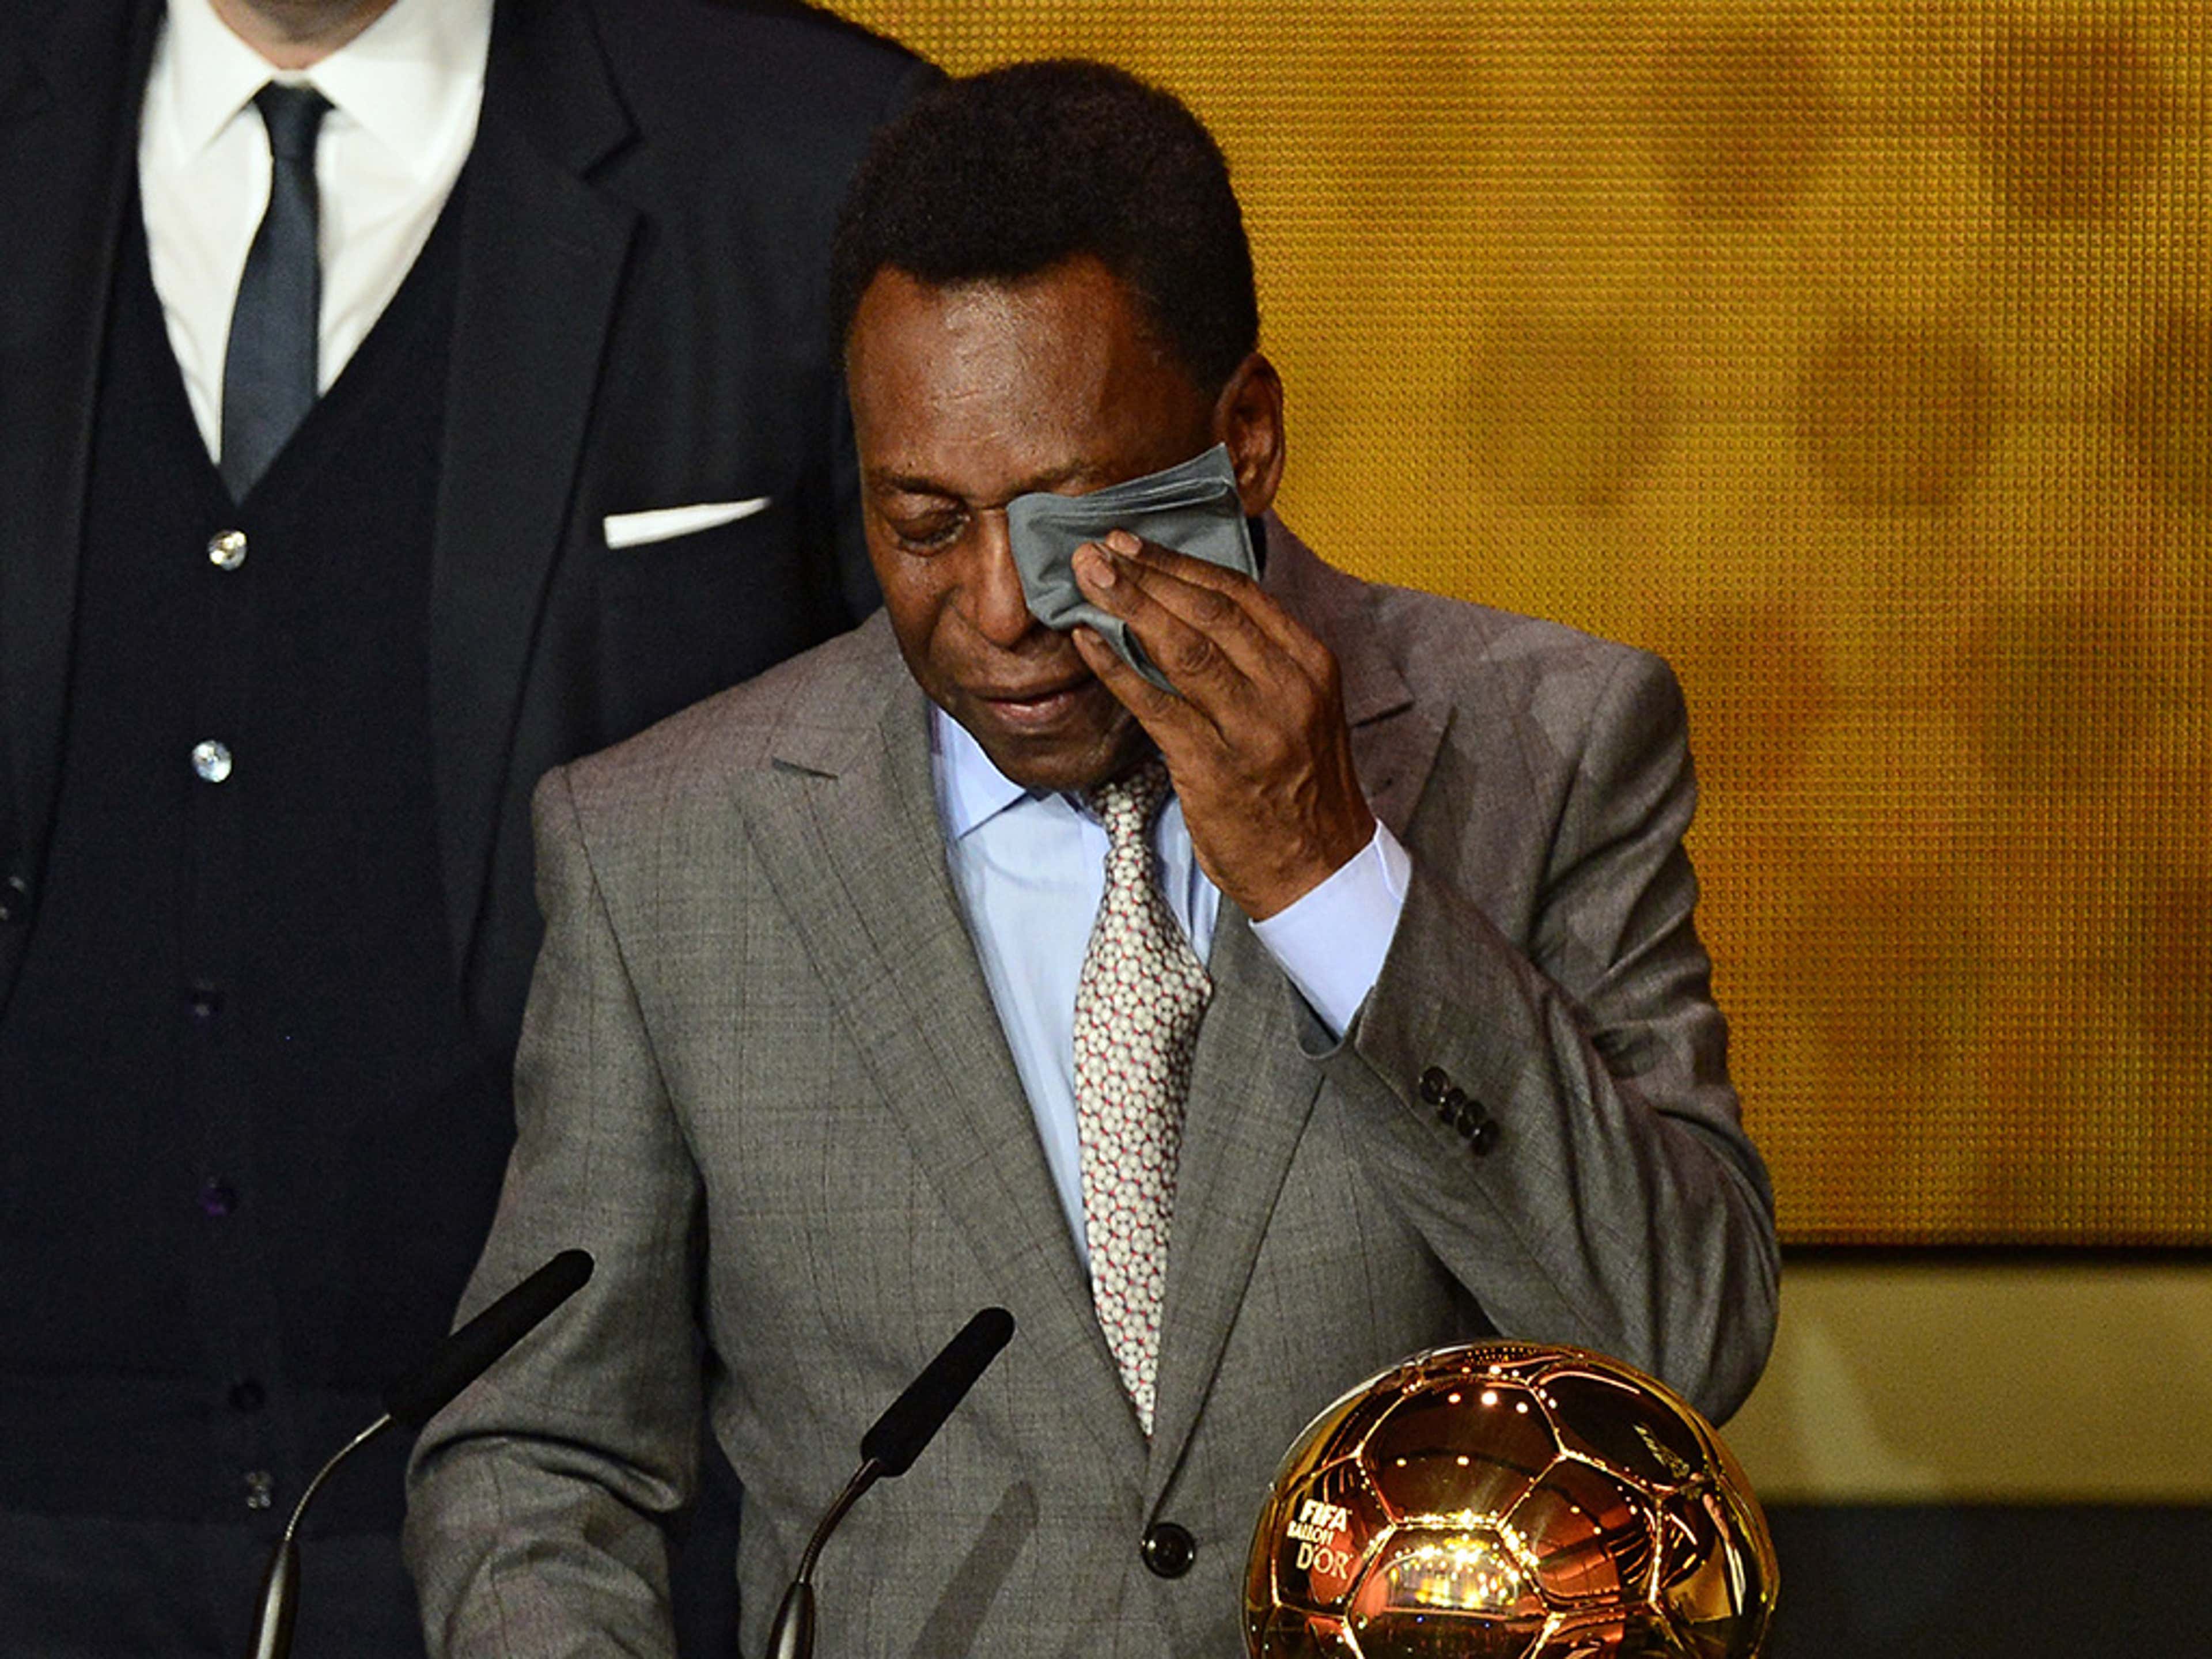 FIFA reveal 2014 Ballon d'Or winner